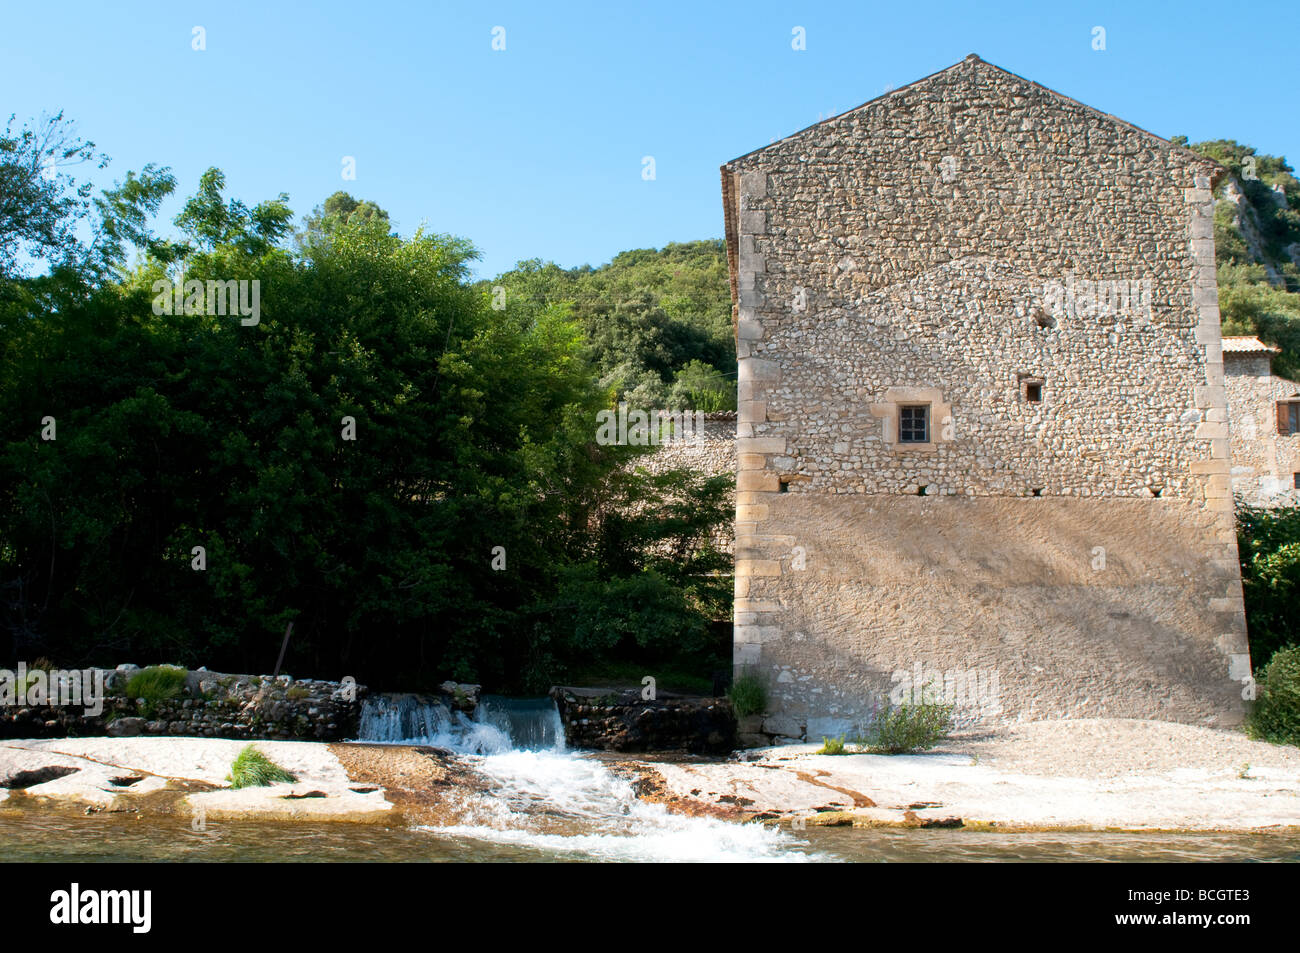 Rivière Cèze et une vieille maison en pierre Languedoc France Banque D'Images